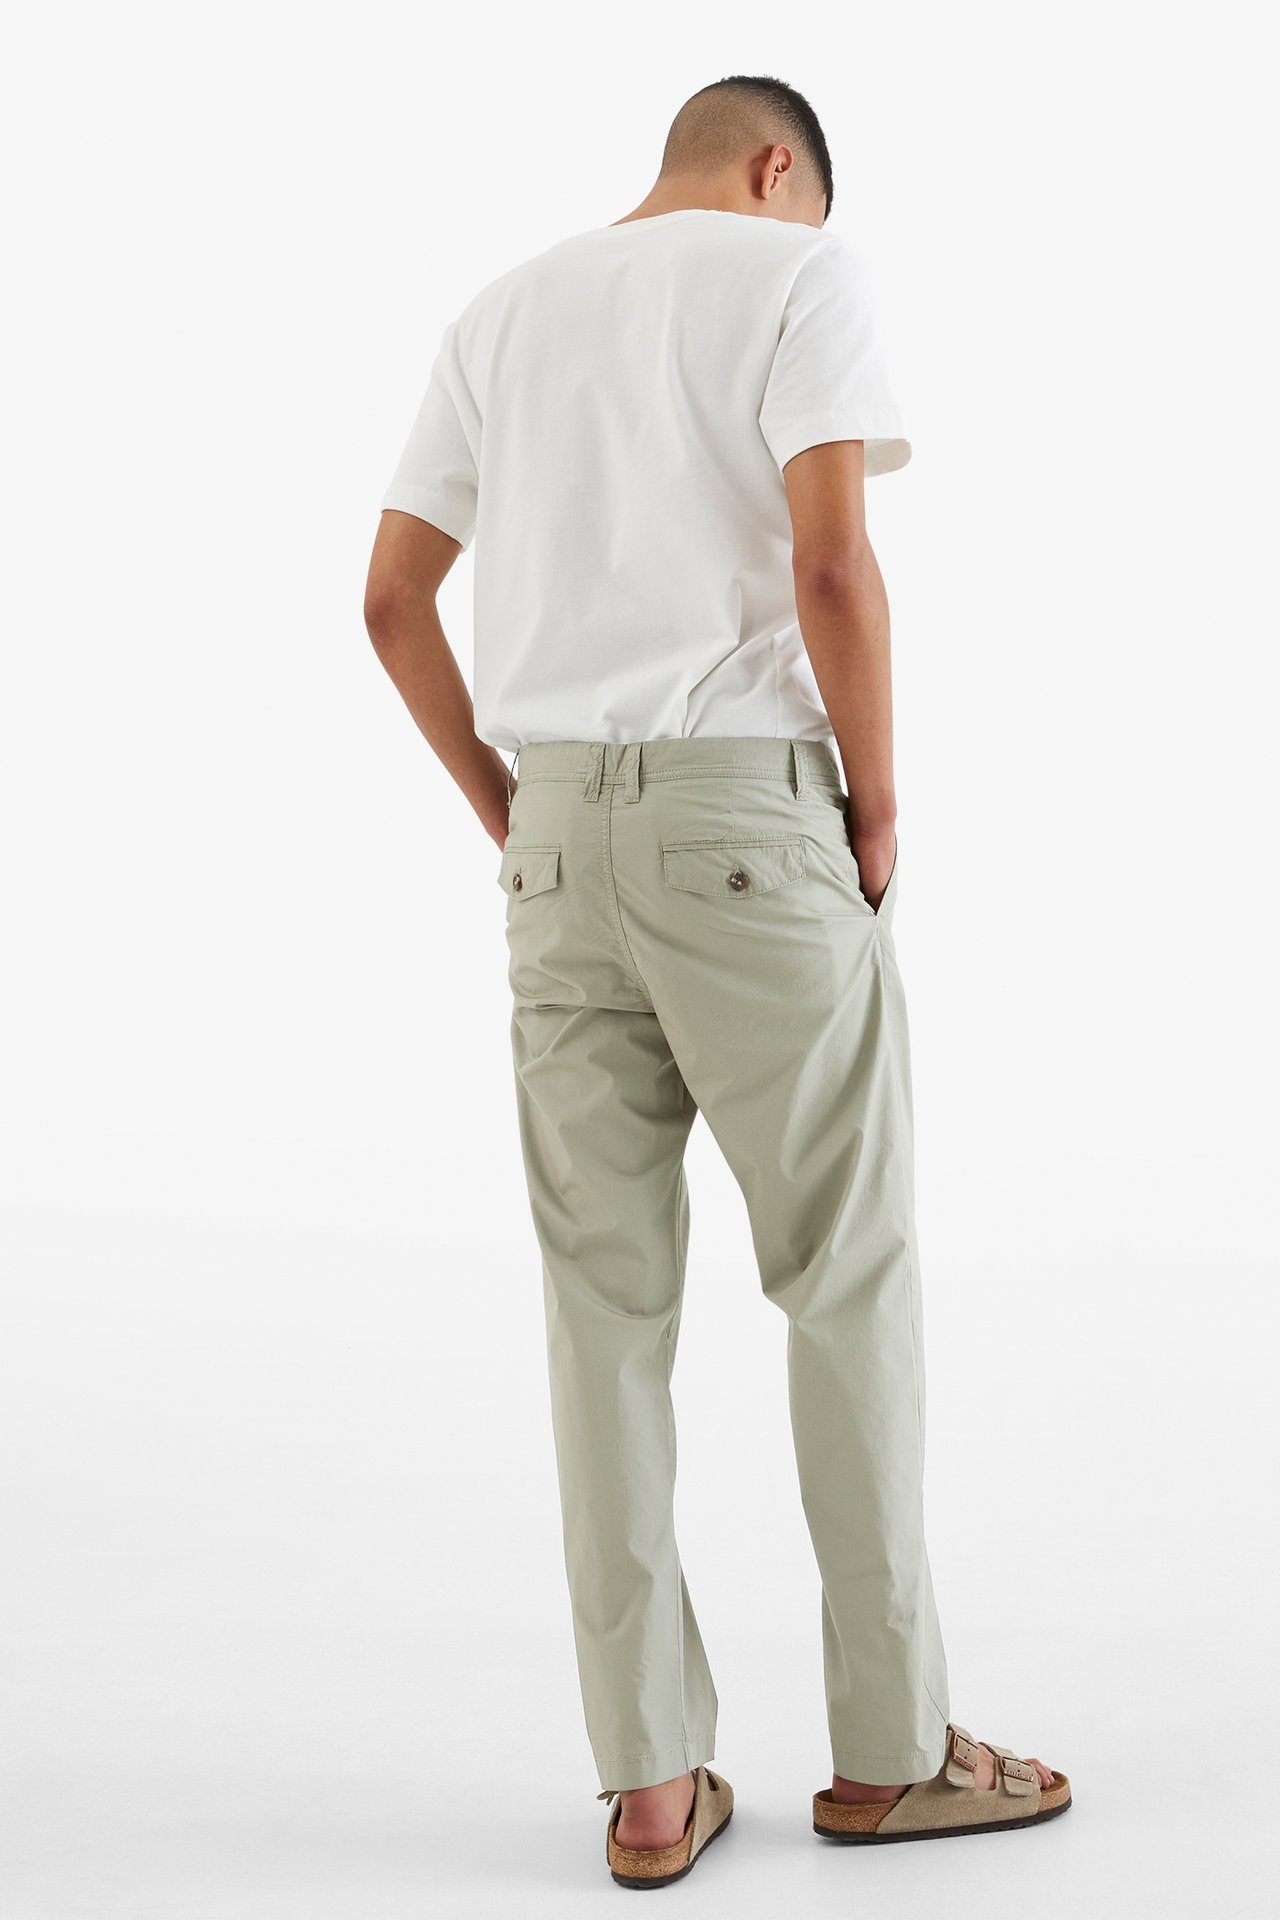 Spodnie typu chinos - Zielony - 189cm / Storlek: 33/34 - 4